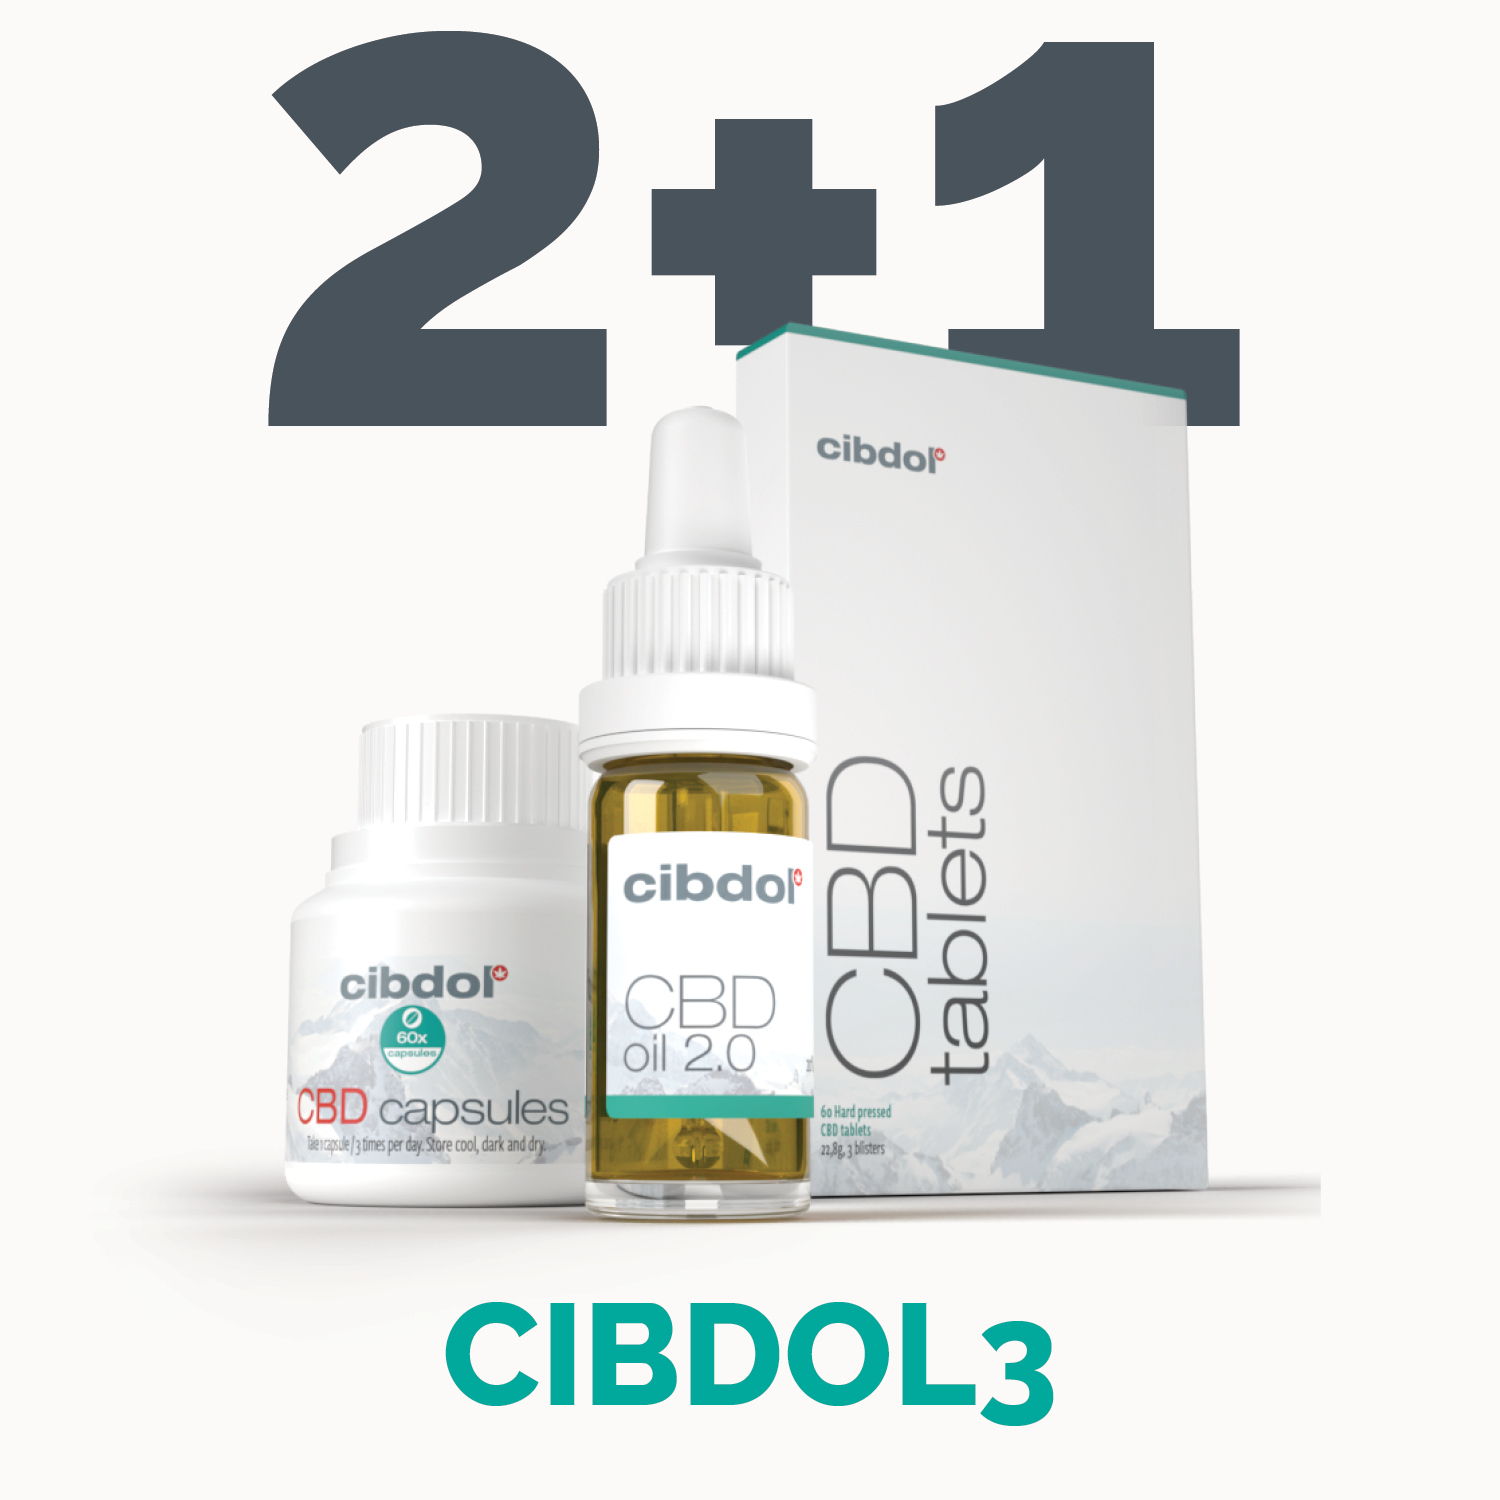 Cibdol 3 for 2 deal